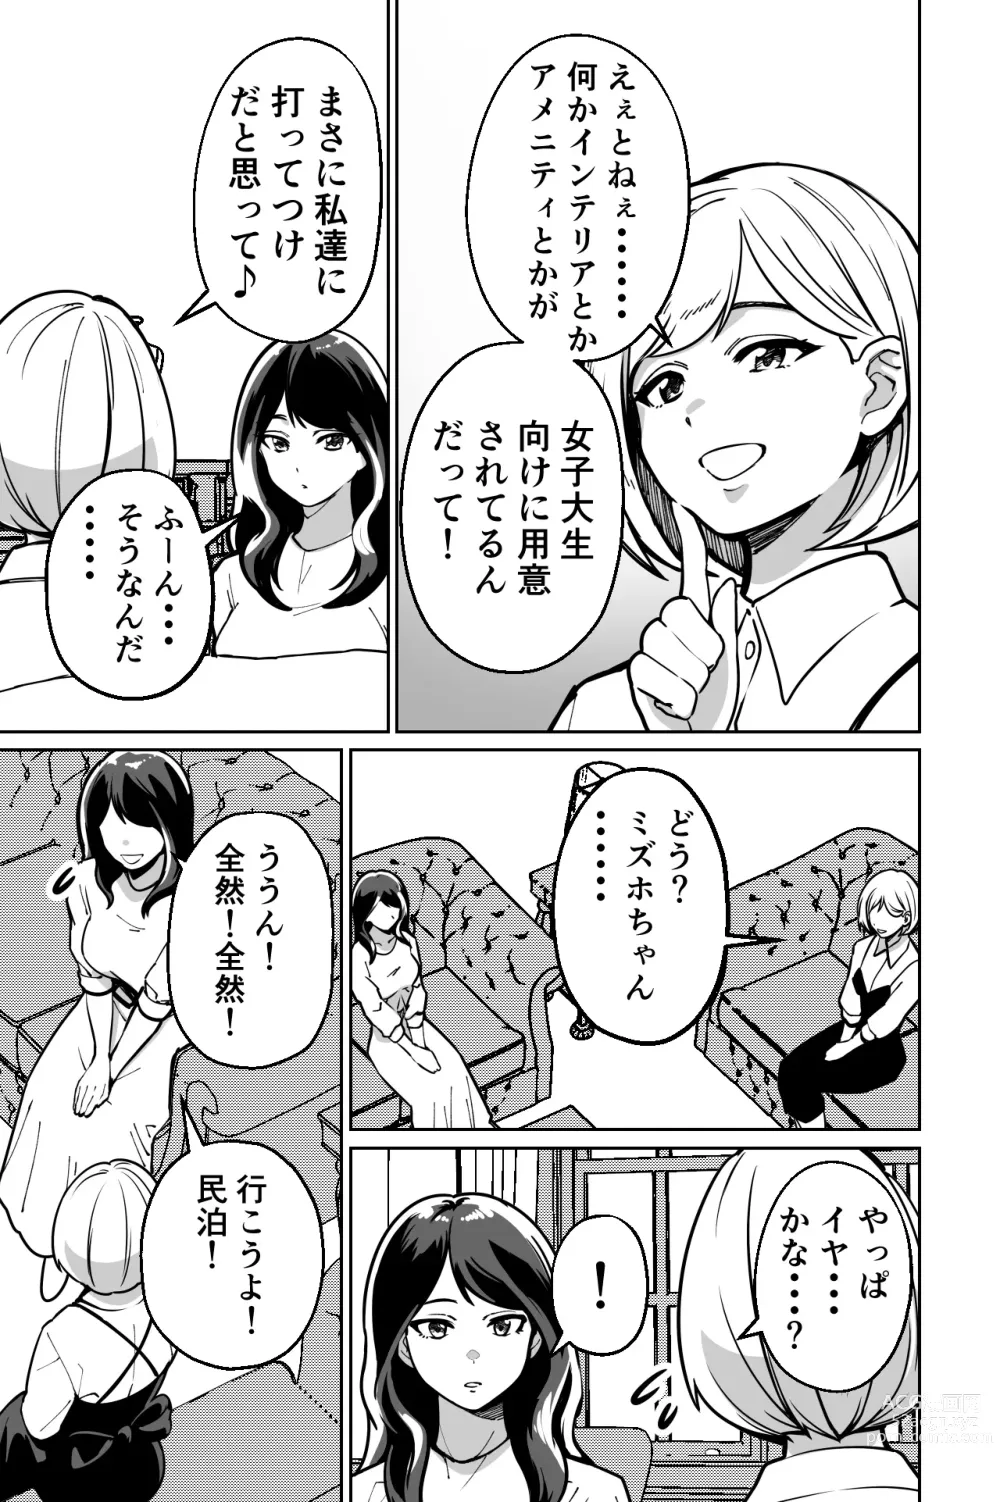 Page 7 of doujinshi Minpaku ~Ojou-sama-tachi wa Minpaku Keieisha no Wana ni Ochiru~